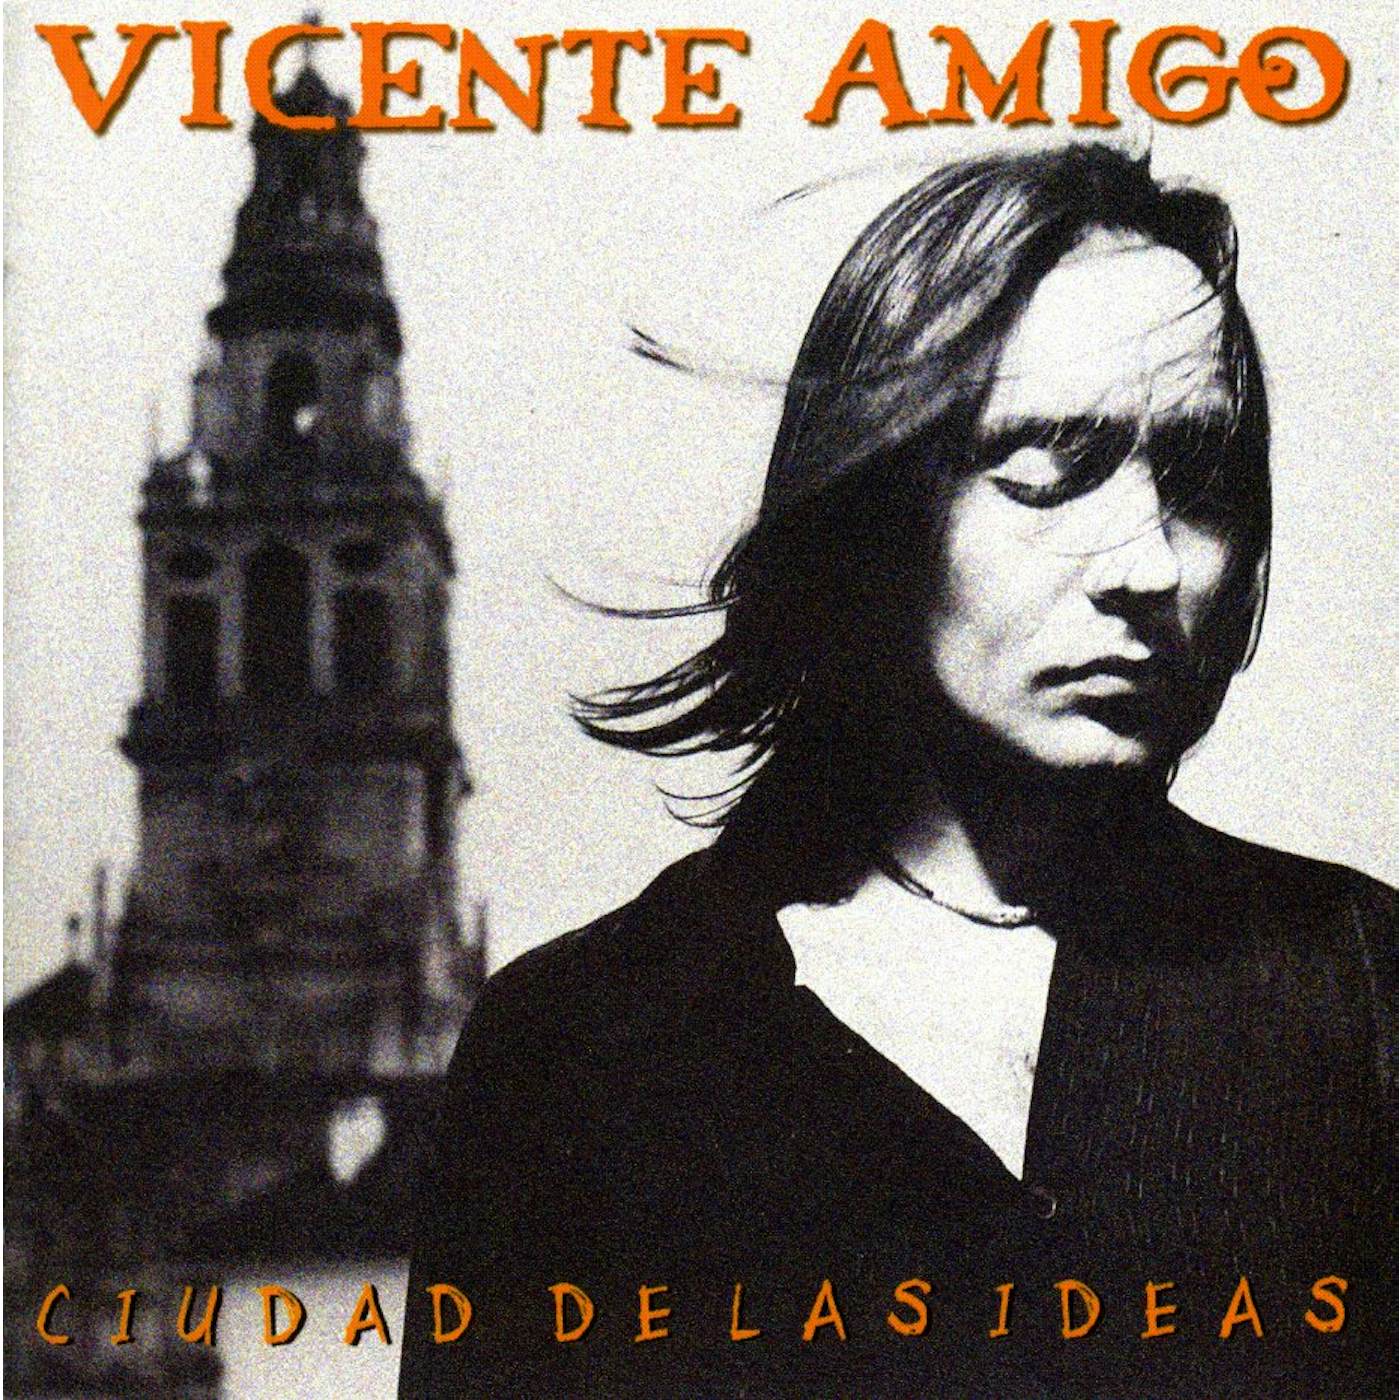 Vicente Amigo CIUDAD DE LAS IDEAS CD